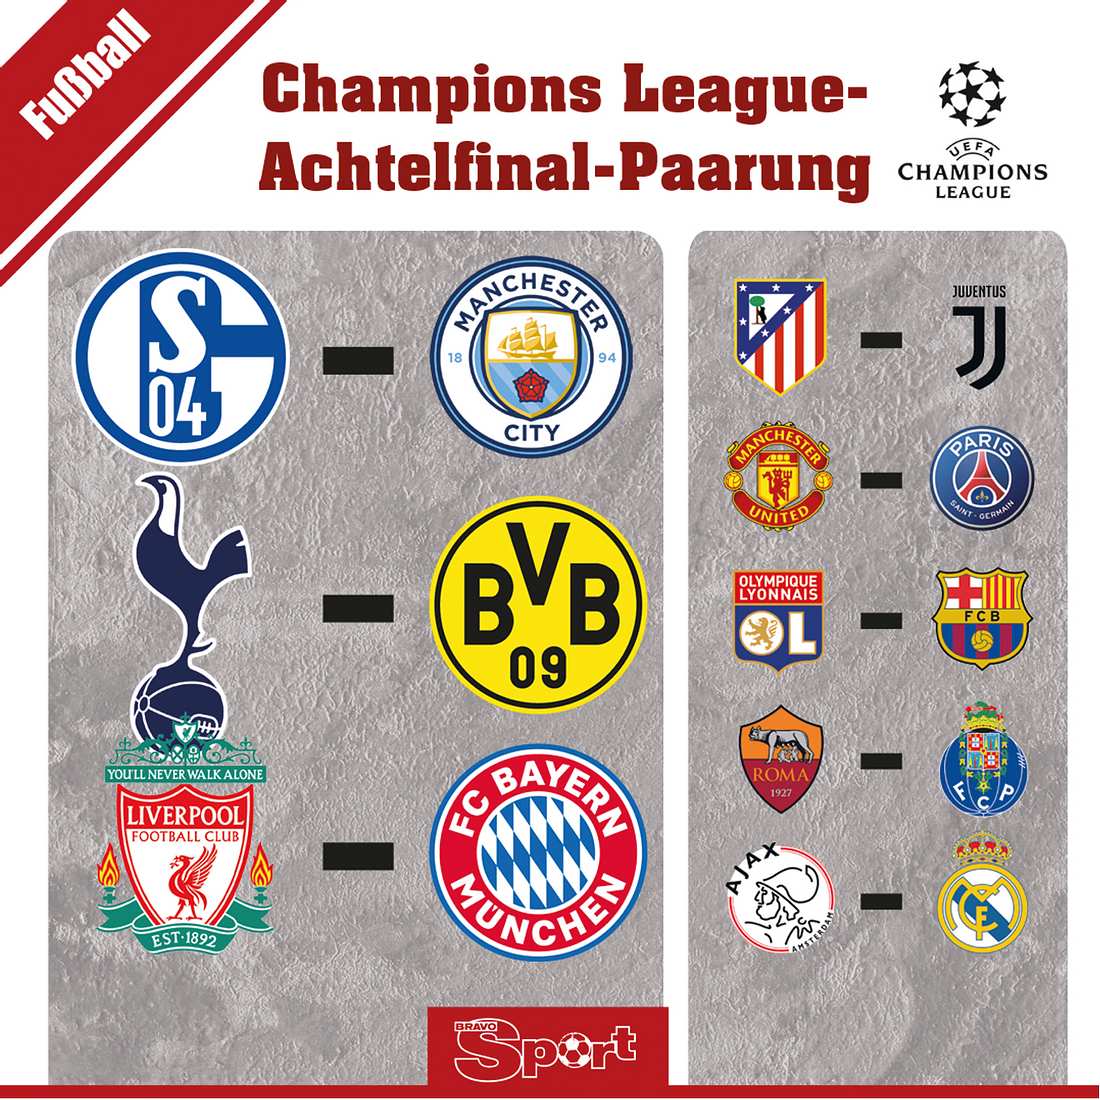 Auf Schalke, Dortmund und Bayern warten mit Man City, Tottenham und Liverpool echte Kracher-Duelle.